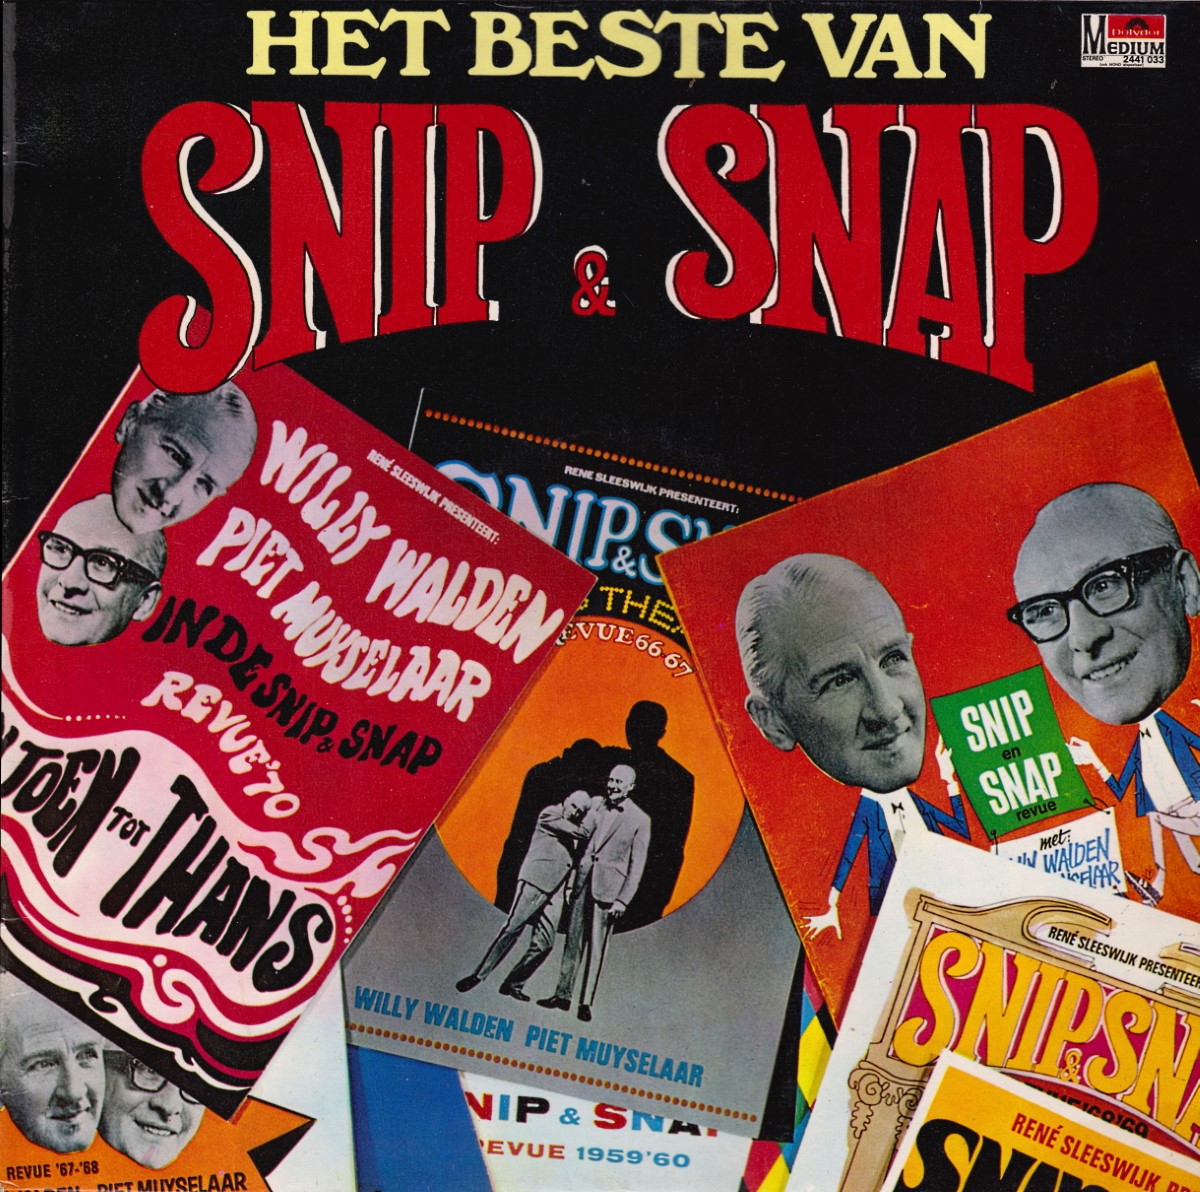 Snip & Snap - Het Beste Van (1975)